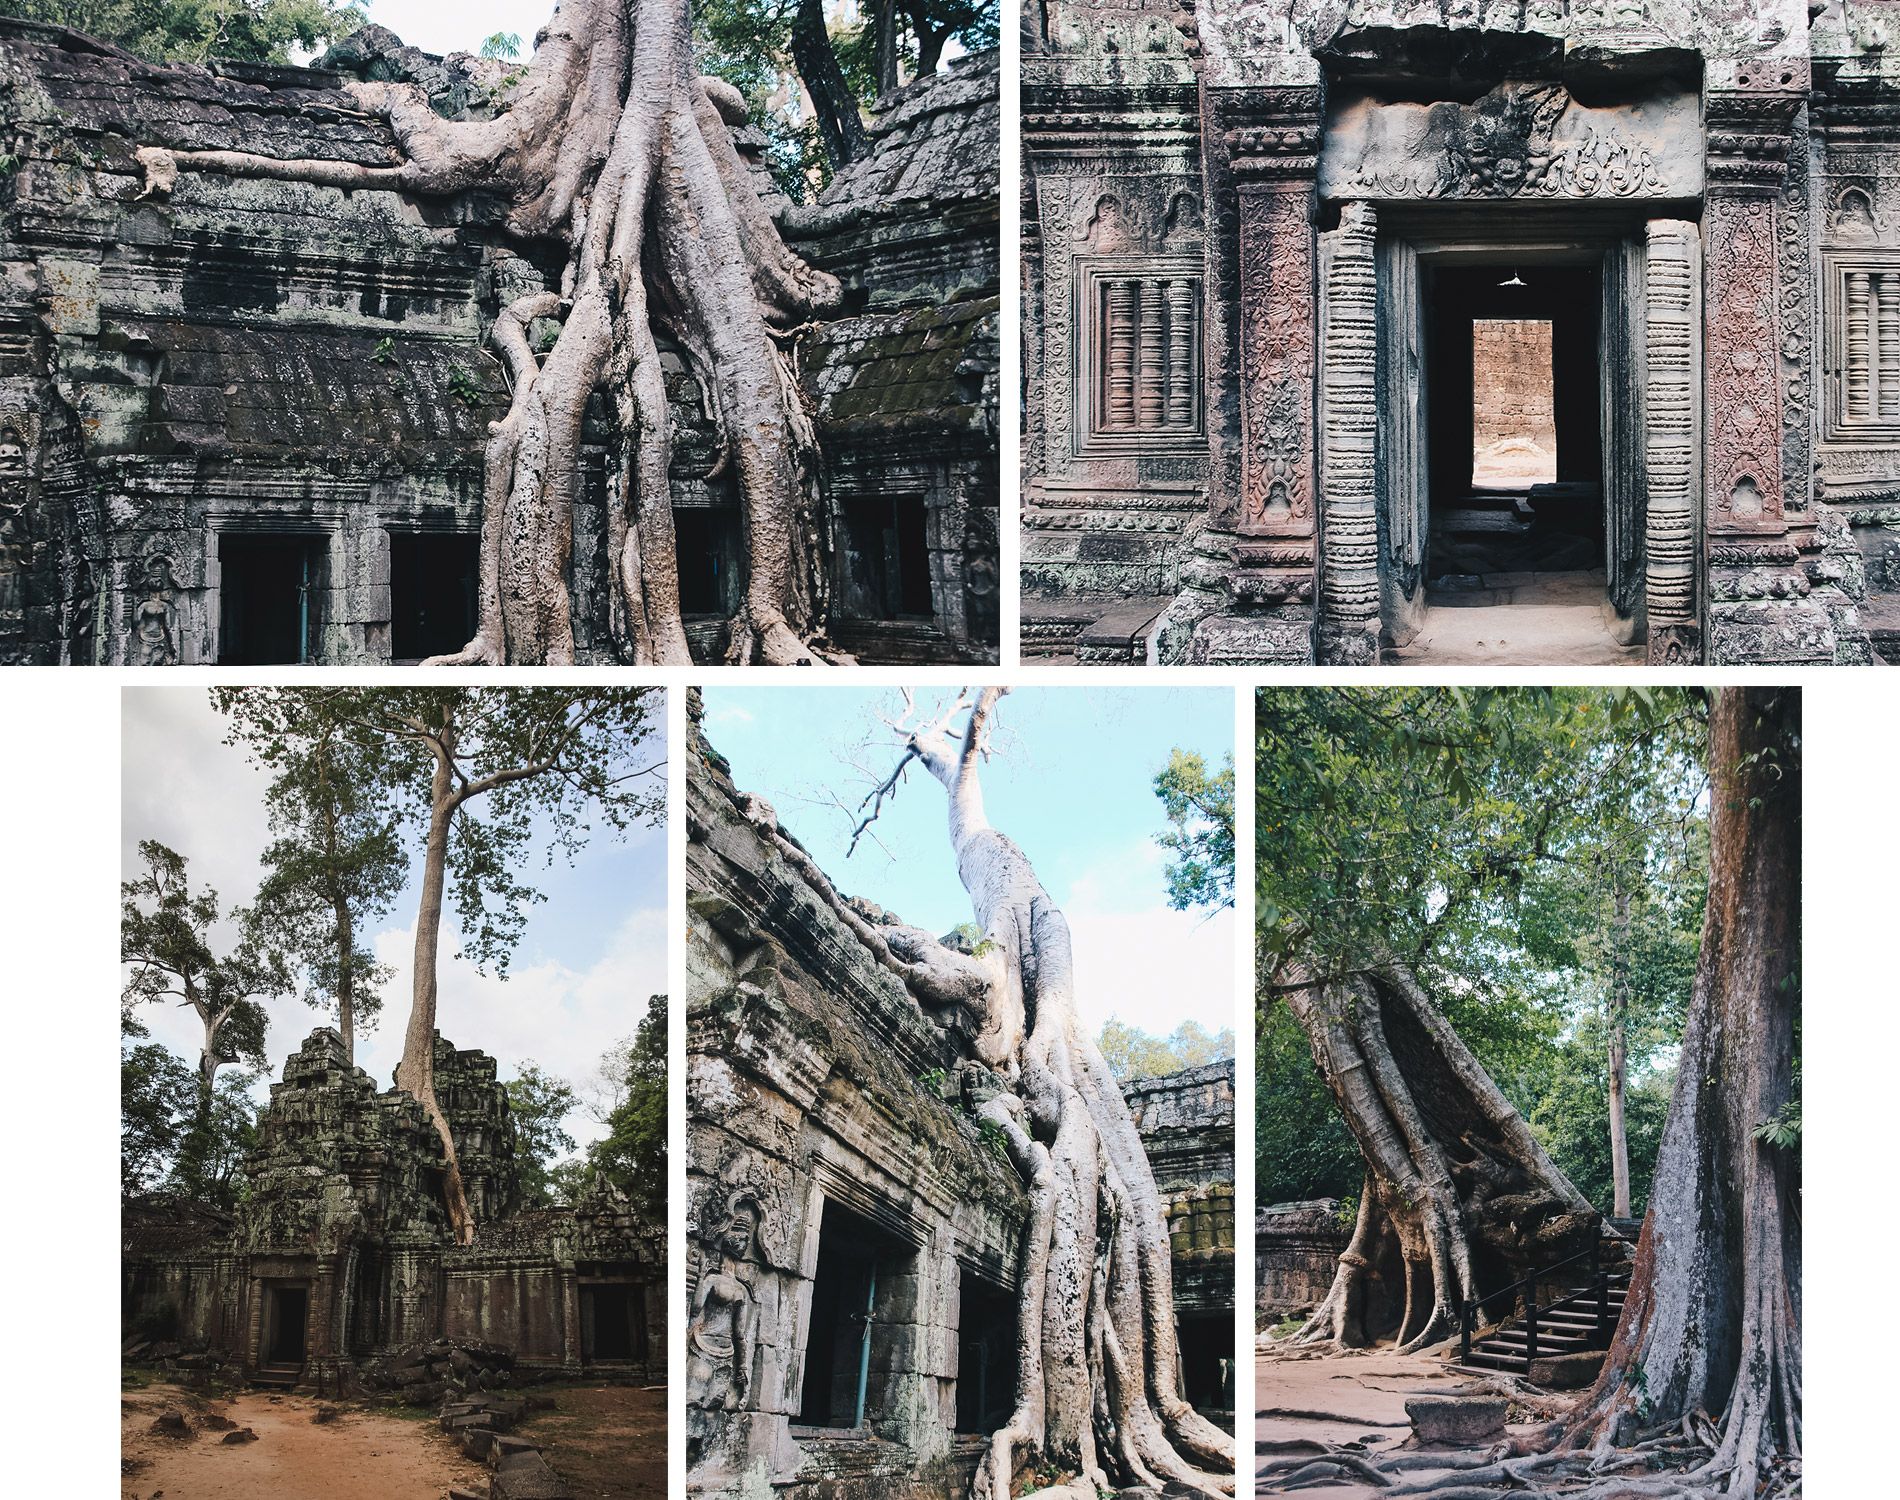 Cambodge | Siemp reap | Angkor